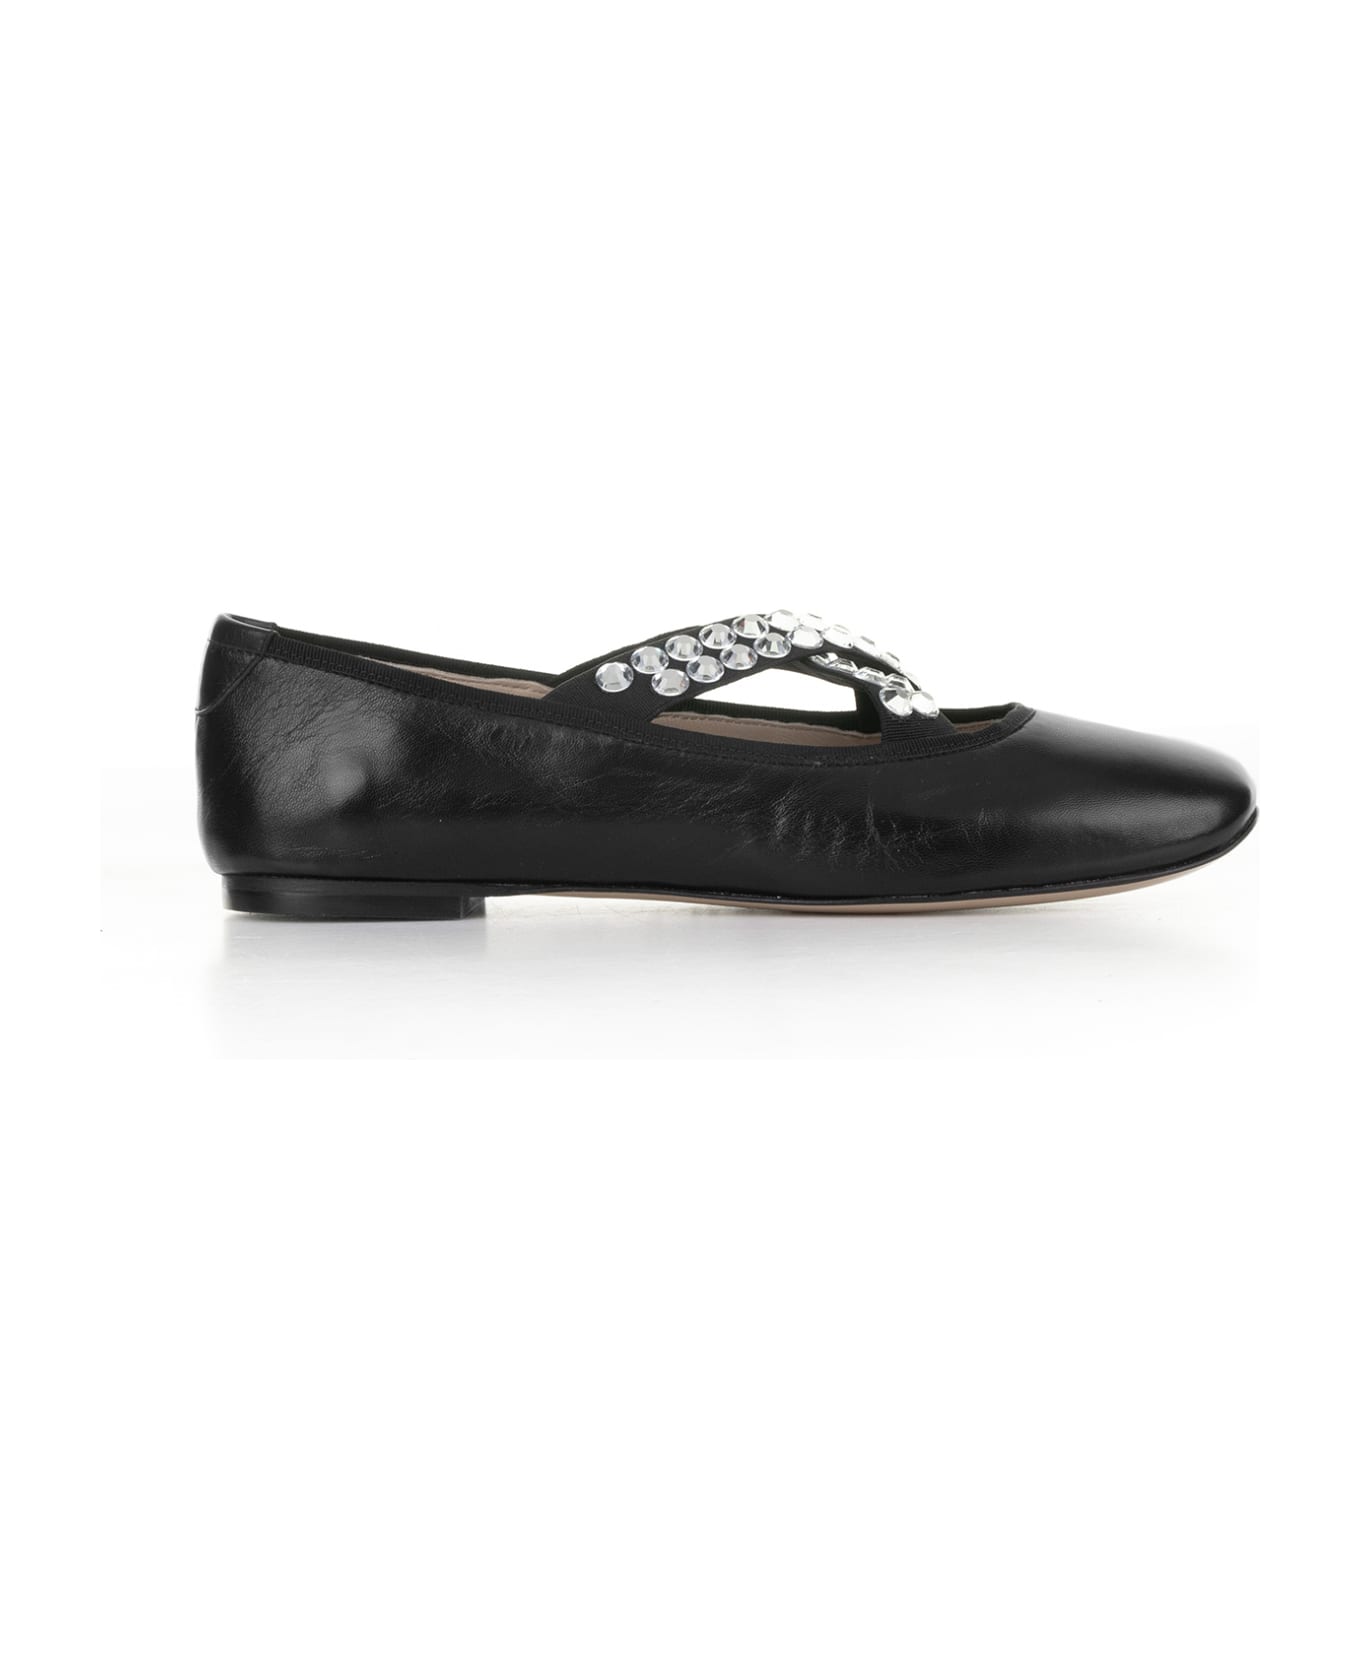 Casadei Queen Bee leather ballerina shoes - Silver